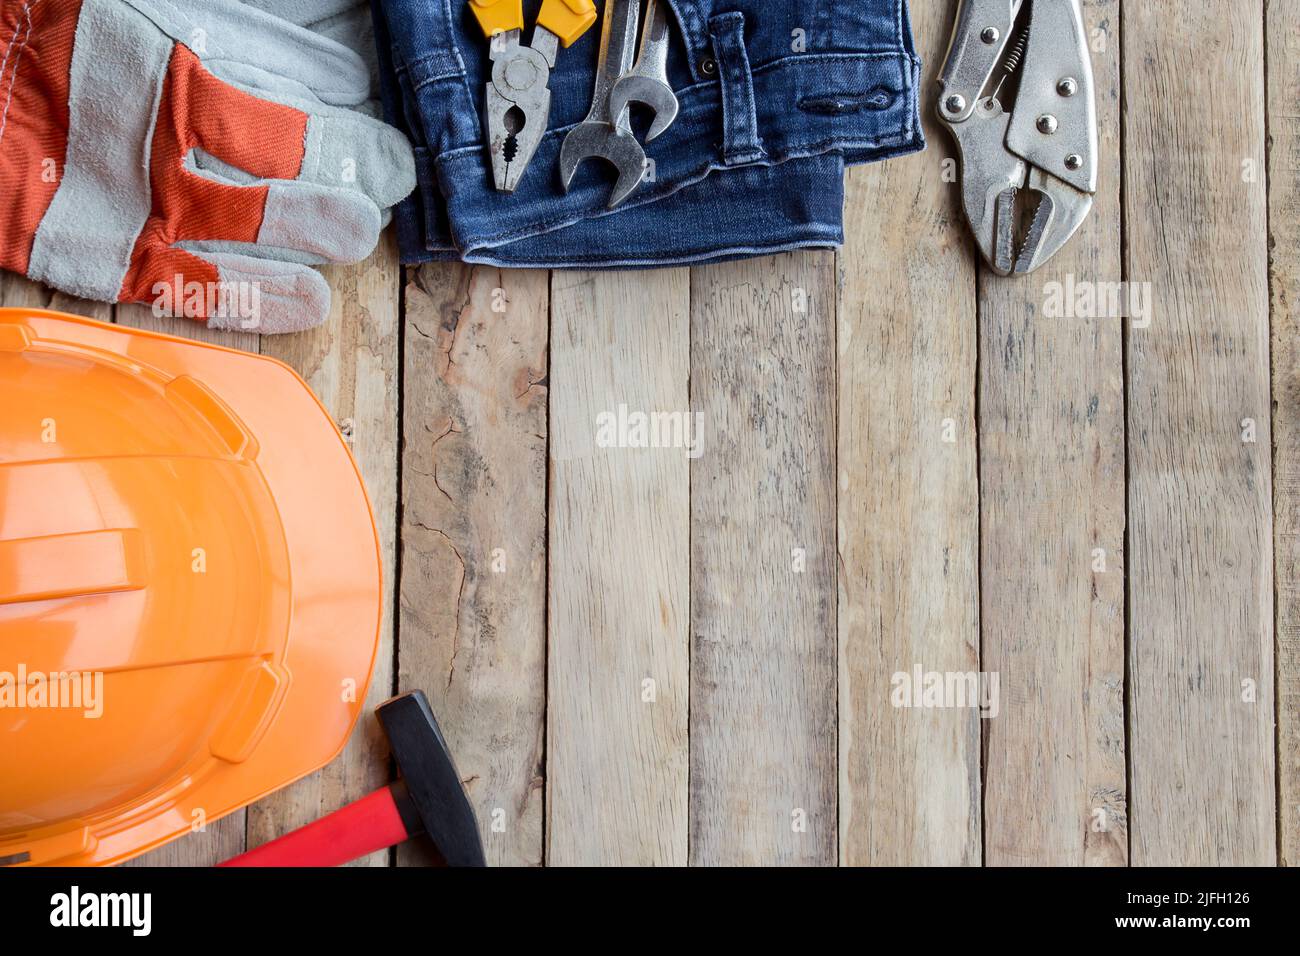 Labor Day ist ein Bundesfeiertag der Vereinigten Staaten von Amerika. Reparaturgeräte und viele praktische Werkzeuge auf Holzkälbe Hintergrund. Draufsicht mit Kopierbereich fo Stockfoto